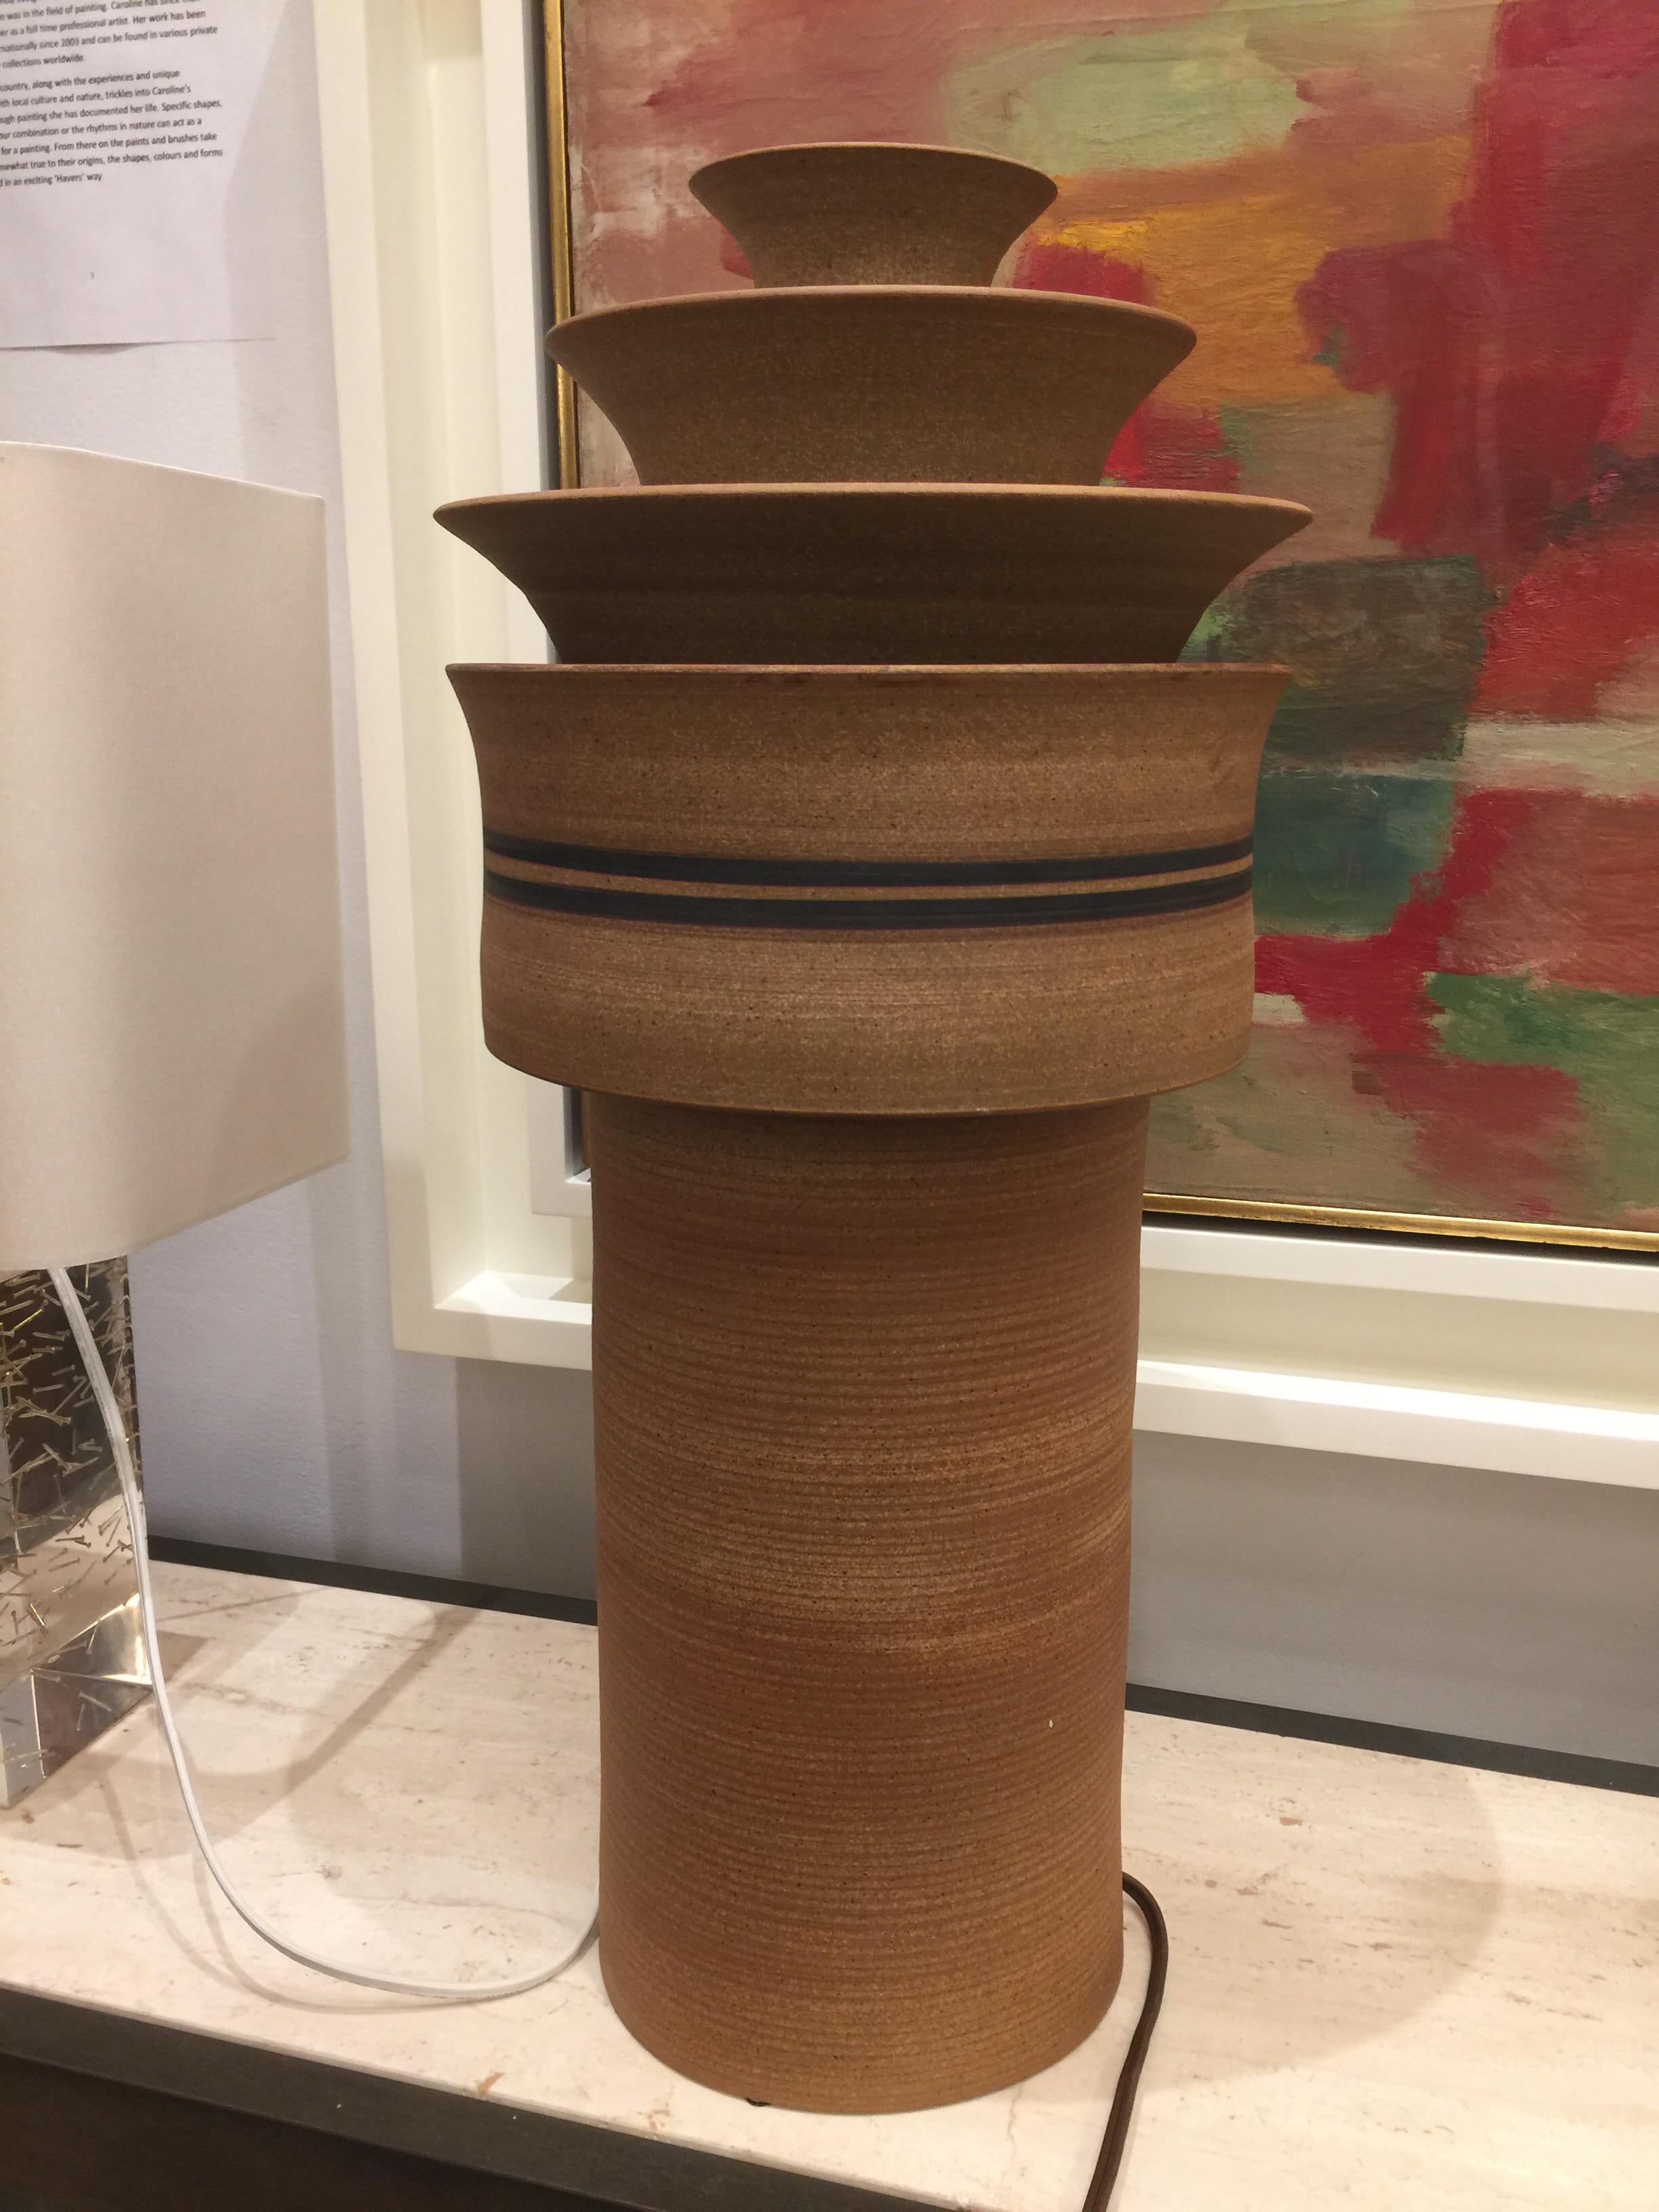 Lampe von Arne Bang, dänisches 20. Jahrhundert Studio Potter. Der aus zwei Teilen bestehende Kranz ist abnehmbar, um den Zugang zur Lampenfassung zu ermöglichen.

Arne Bang (1901-1983) wurde an der Royal Academy of Arts zum Bildhauer ausgebildet